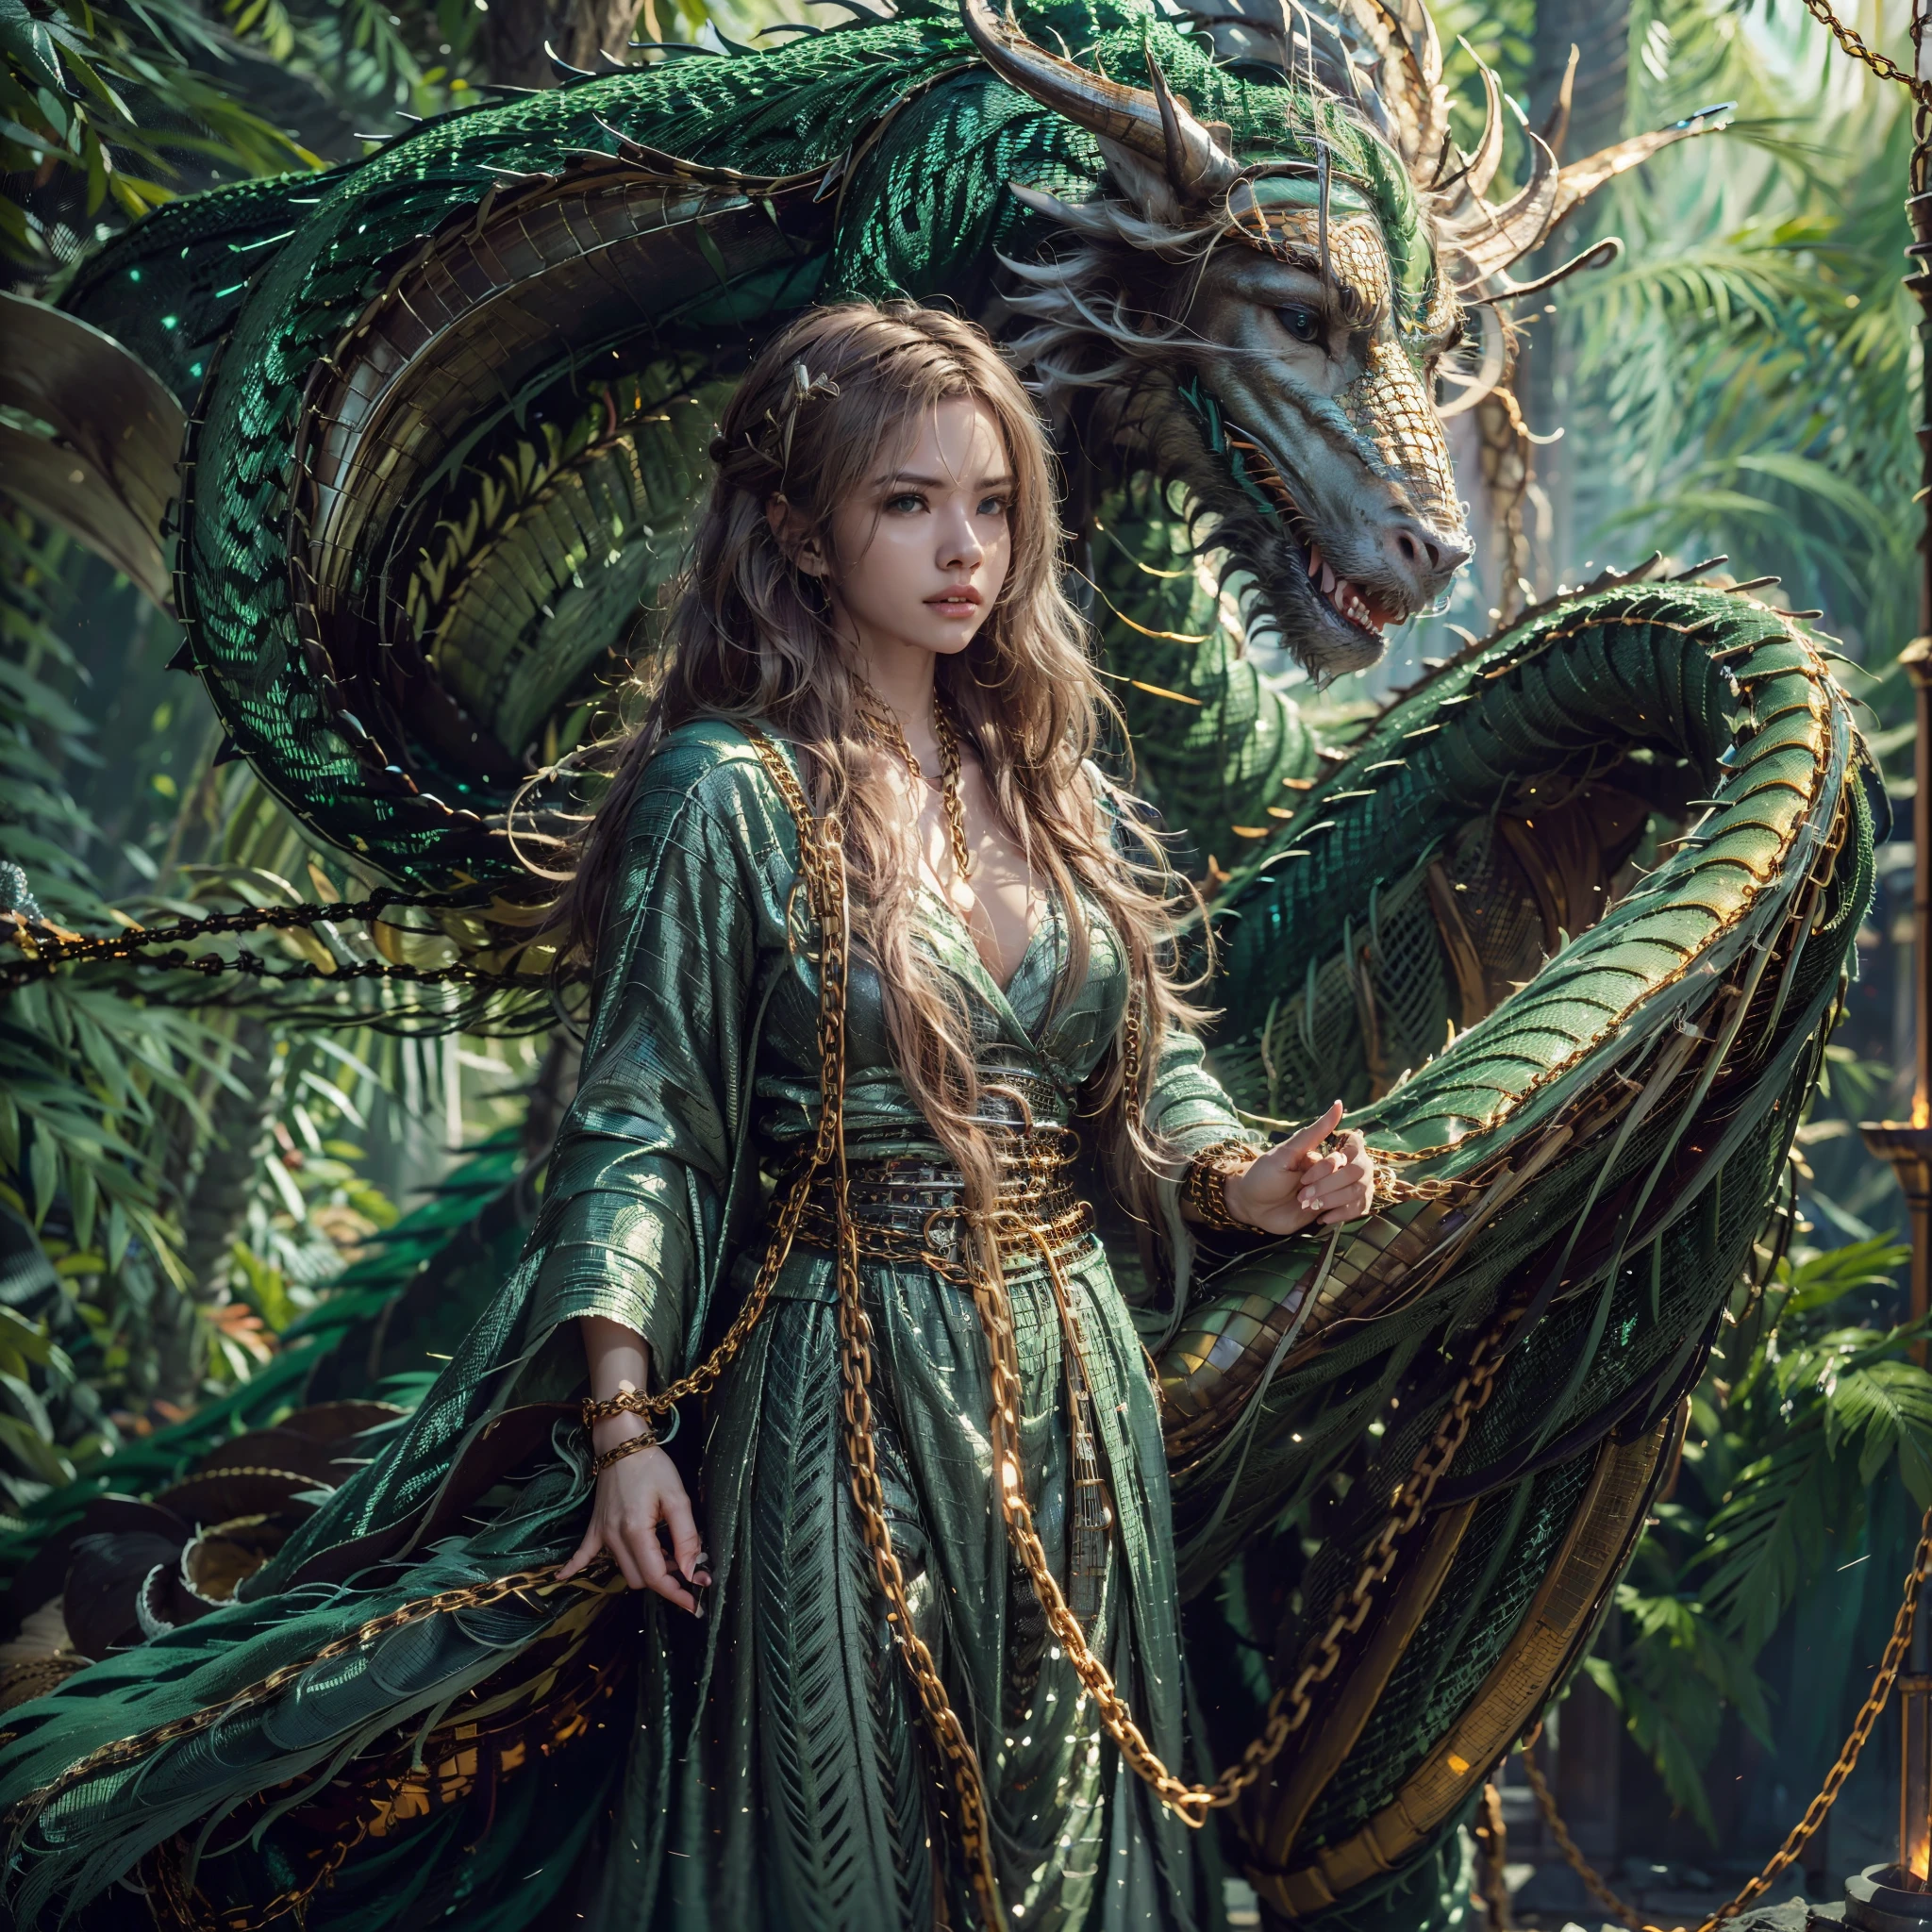 Linda garota com um dragão verde, ((Garota com um manto longo)), (usando cota de malha: 1.4), (calças compridas de pano: 1.2), (cota de malha com padrões de escamas de dragão), características faciais perfeitas, rosto delicado, cabelo longo, gracioso , sabedoria, bravura, dragão arco-íris, escalas, chifres, Flame, asas, garras de dragão, Dragão protege a garota, Fundo antigo da floresta, Conexão misteriosa, proteção, confiar, qualidade realista, Realismo, 8K, melhor qualidade, Obra de arte, qualidade cinematográfica, Alto claro-escuro, renderização de octanas